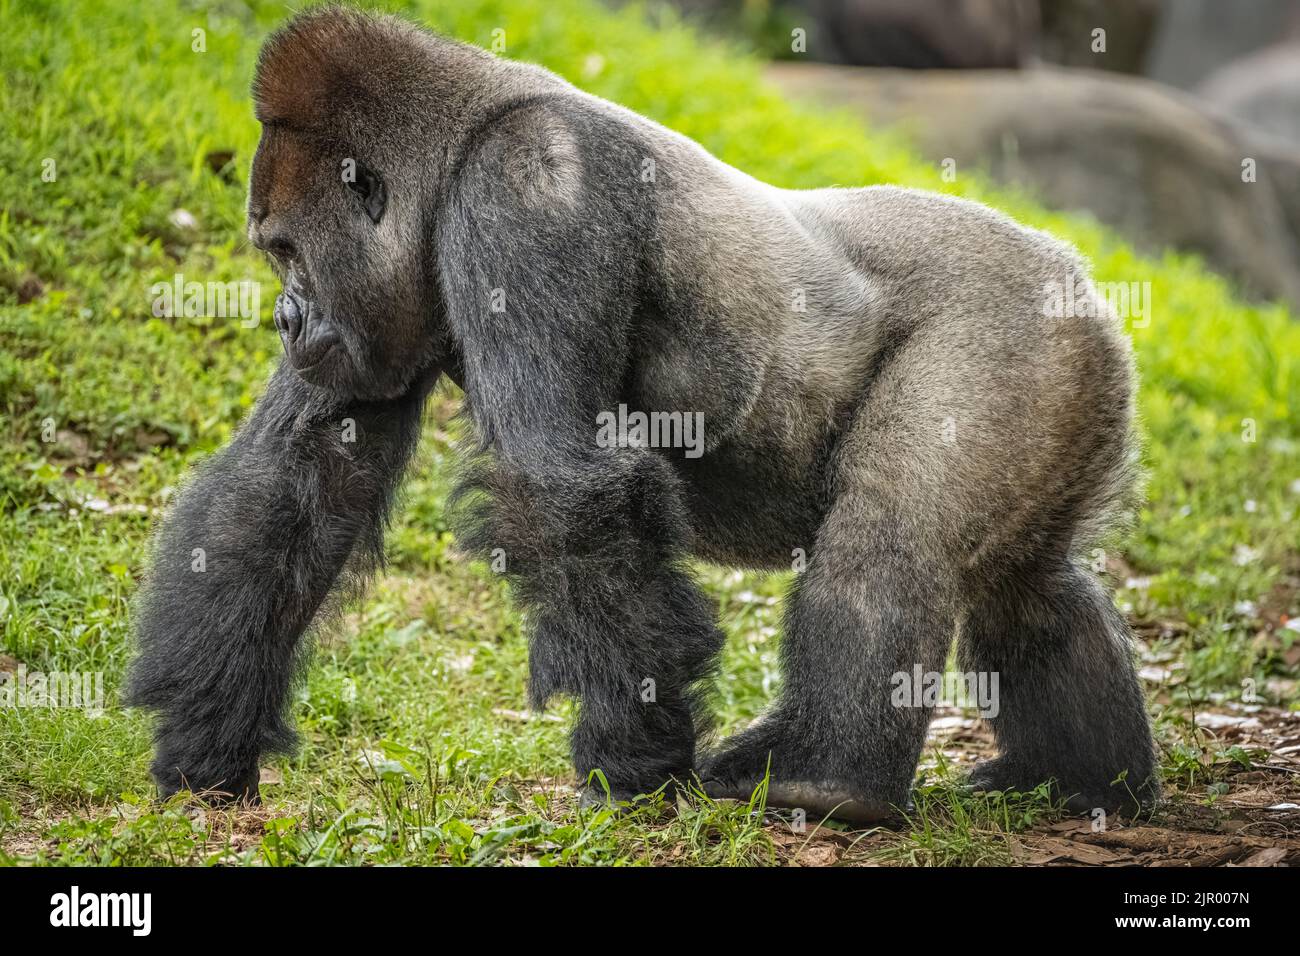 Silverback, gorille des basses terres de l'ouest, marche à pied au zoo d'Atlanta, en Géorgie. (ÉTATS-UNIS) Banque D'Images